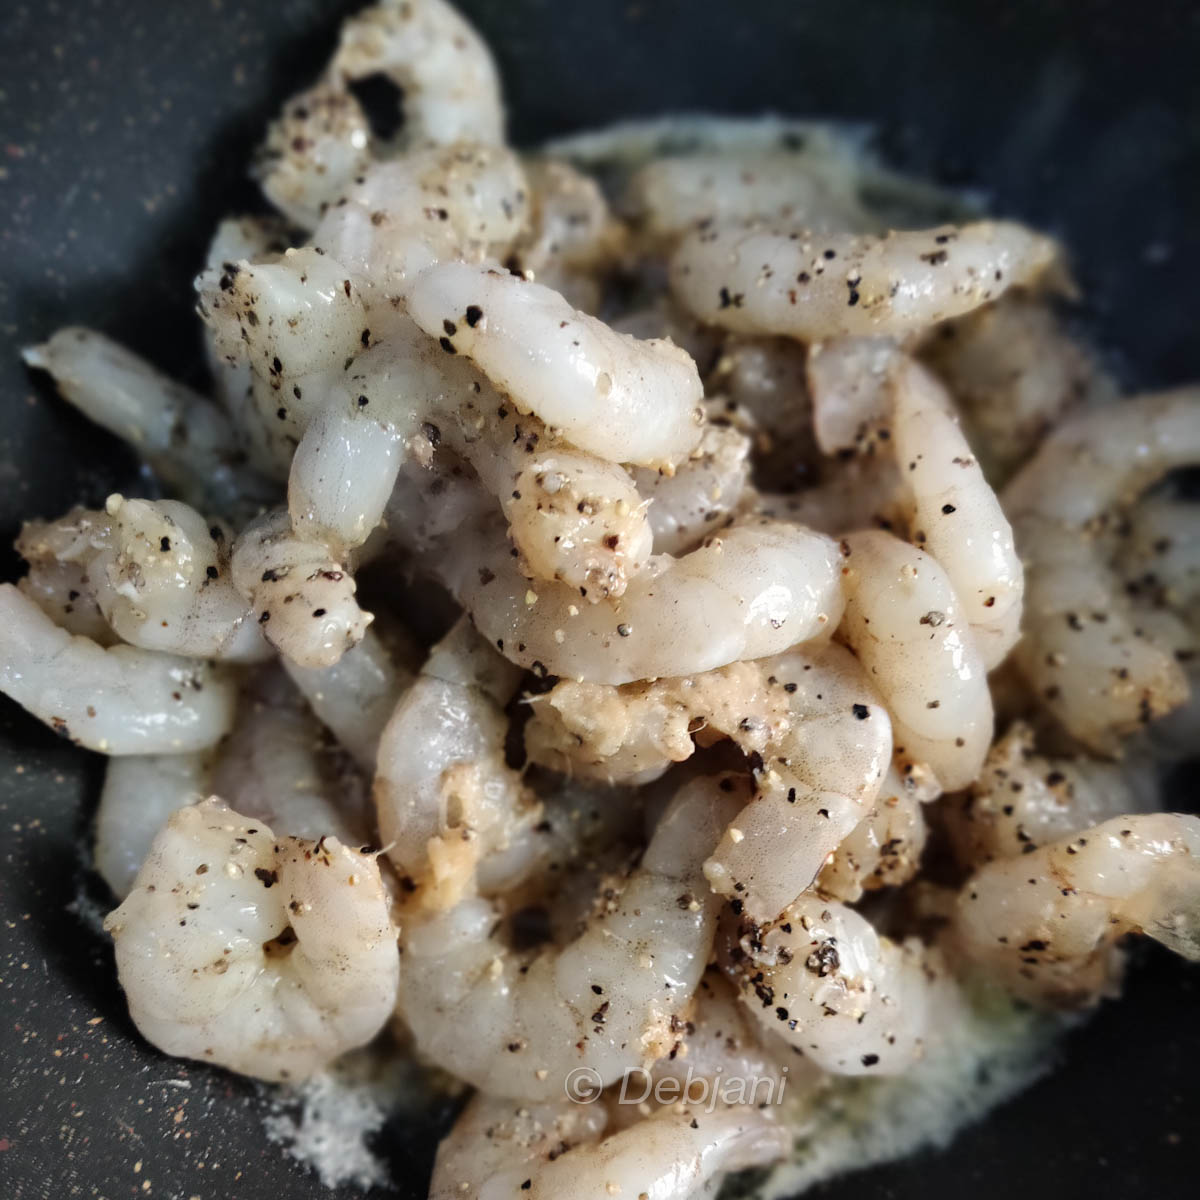 Shrimp and Spinach cream sauce recipe debjanir rannaghar keep marinated (5)